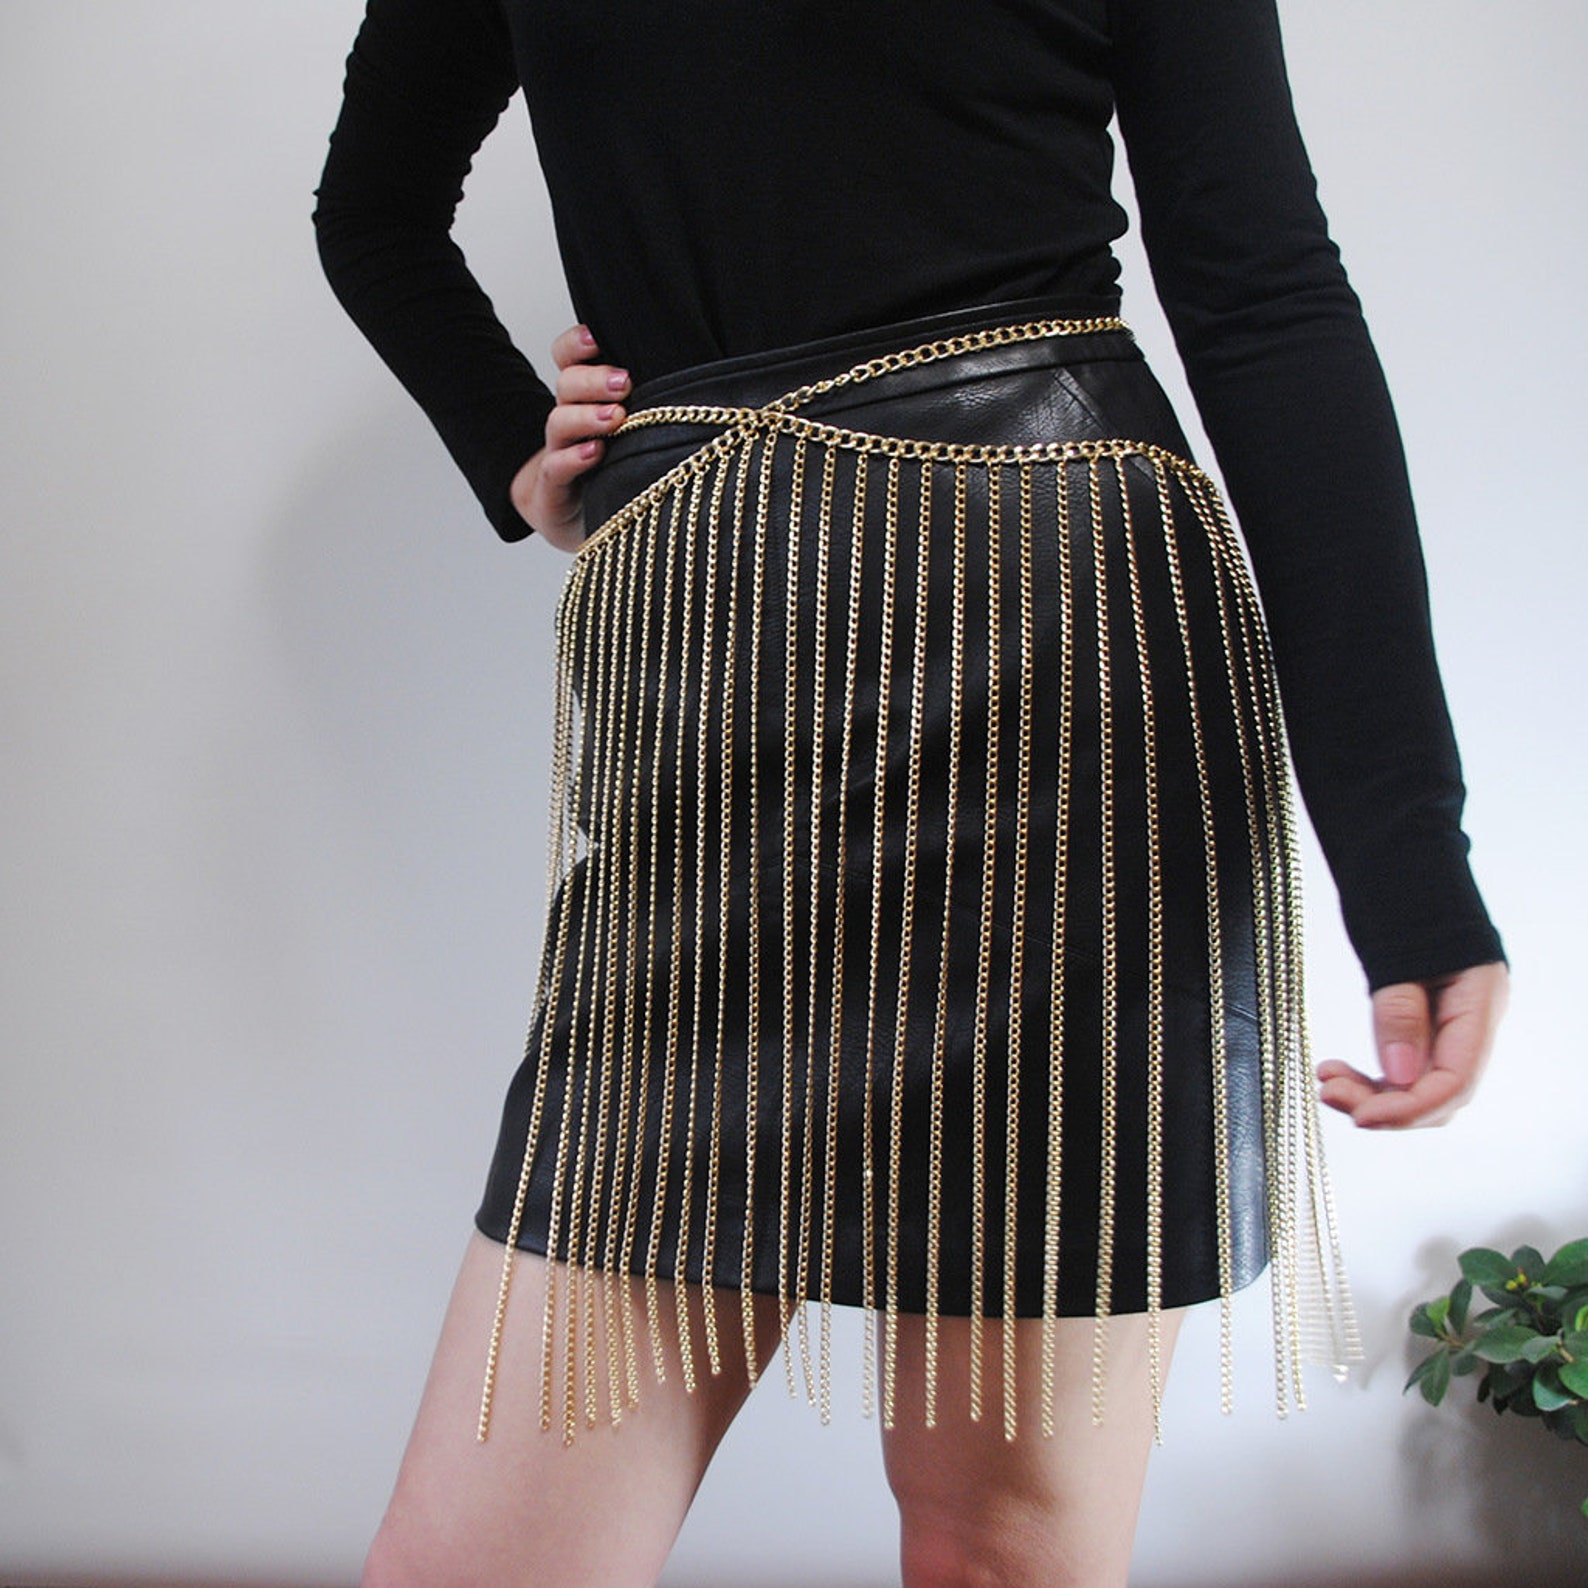 Metal fringed chain skirt | Etsy